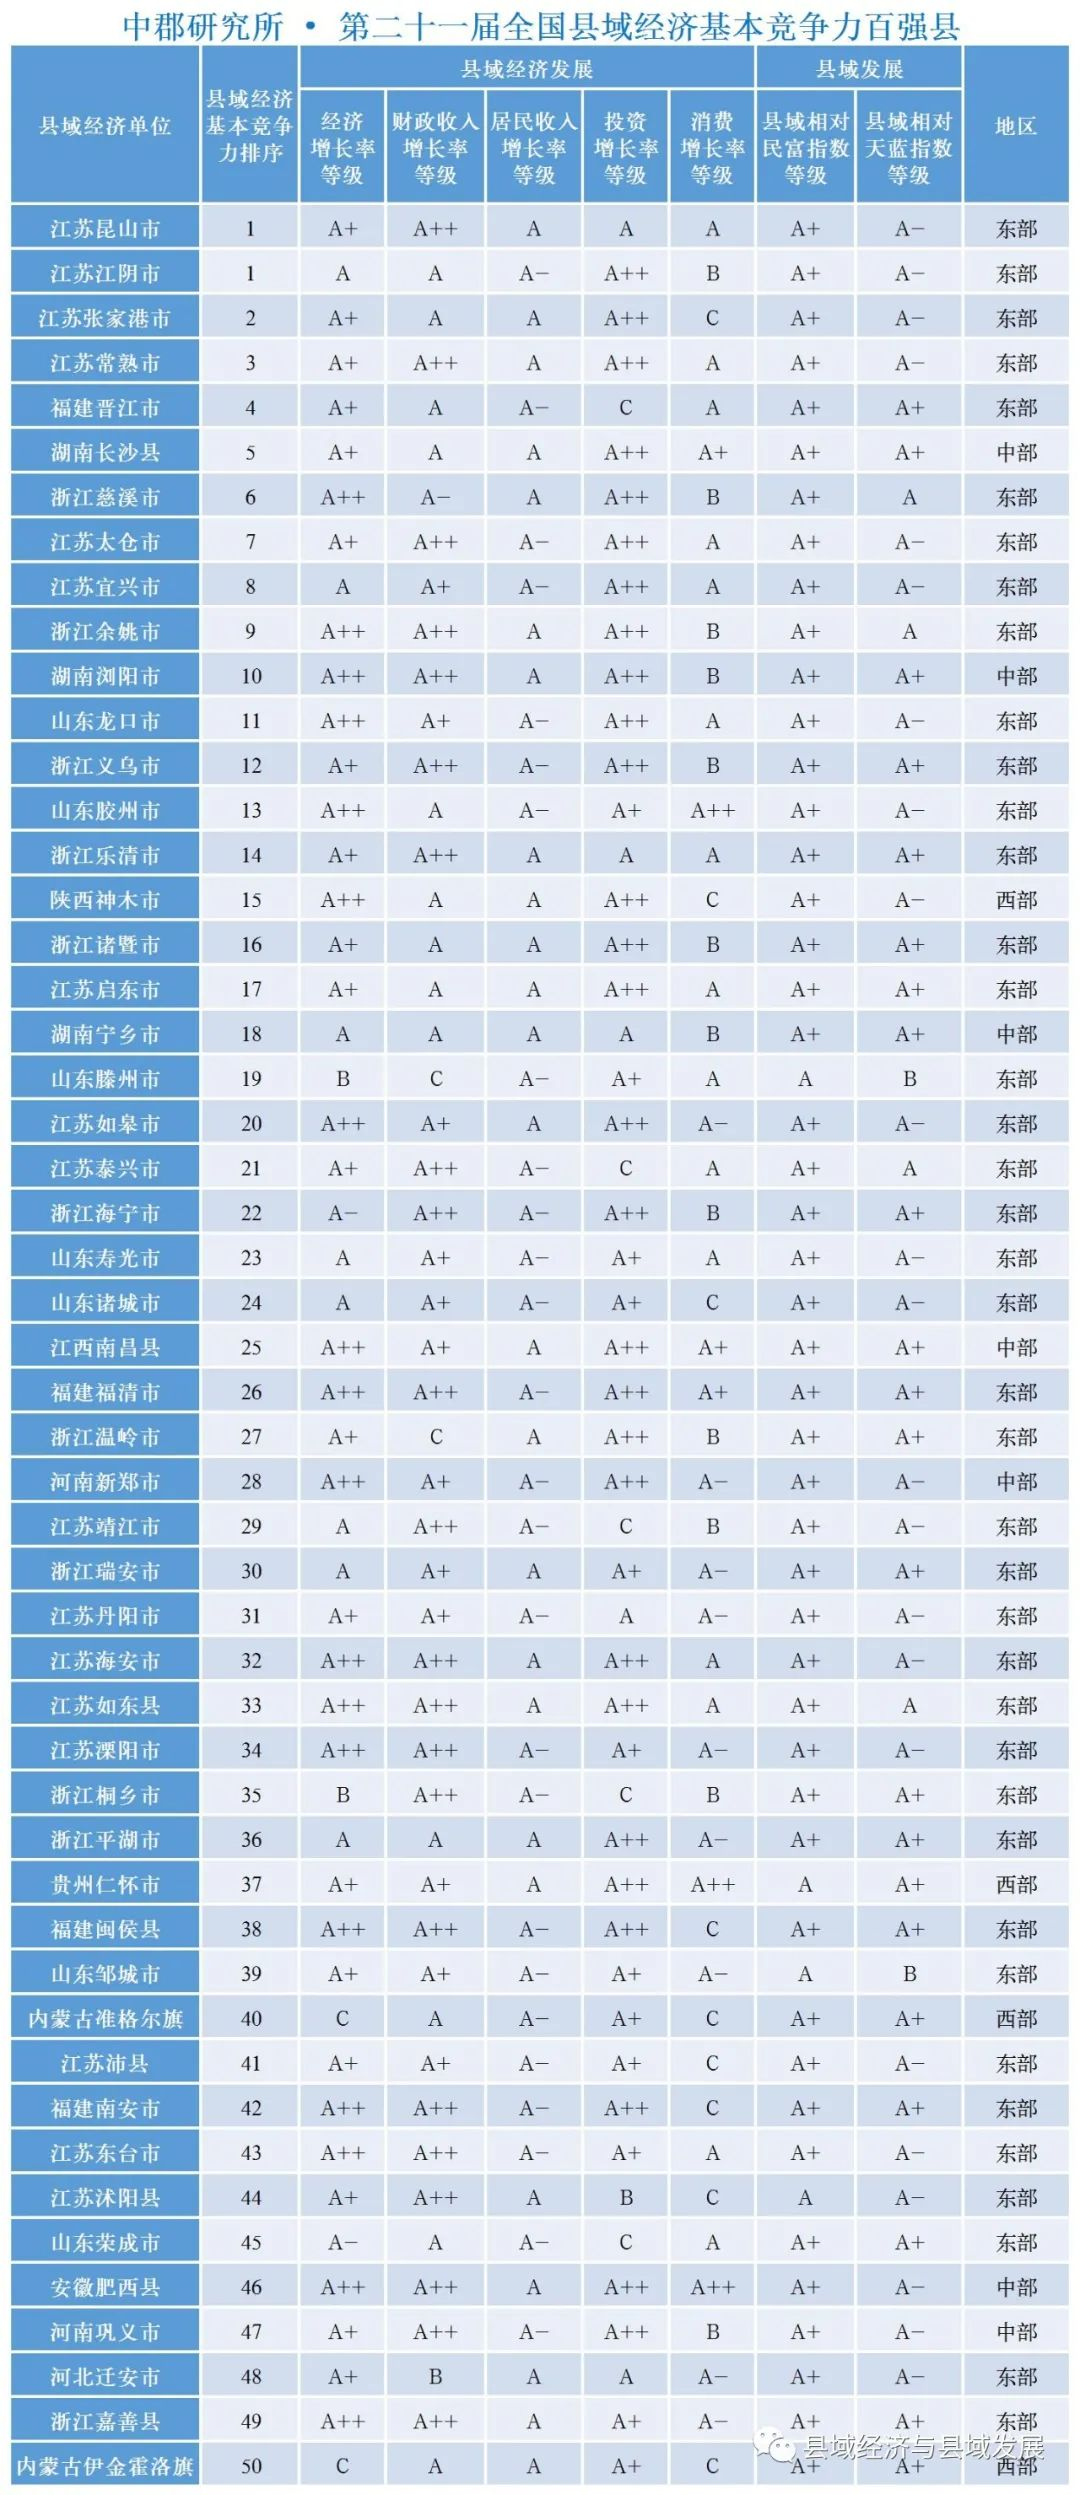 華夏人壽保險公司怎么樣 了解華夏人壽保險公司的服務(wù)質(zhì)量和口碑